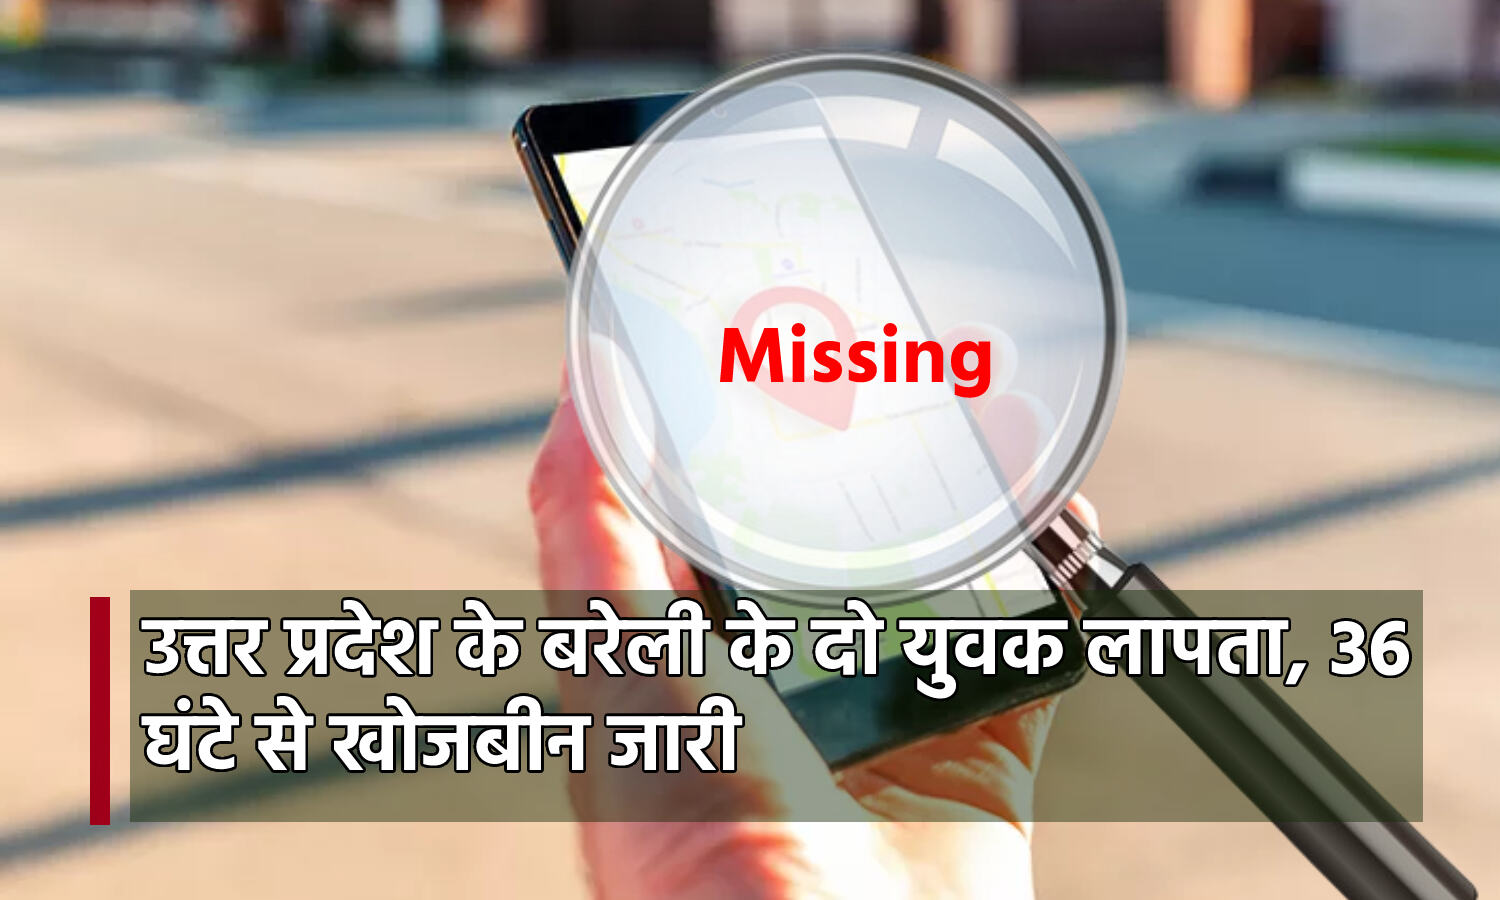 Pithoragarh News : यूपी बरेली के दो ट्रैकर मुनस्यारी में हुए लापता, 36 घण्टे से चल रही है खोजबीन